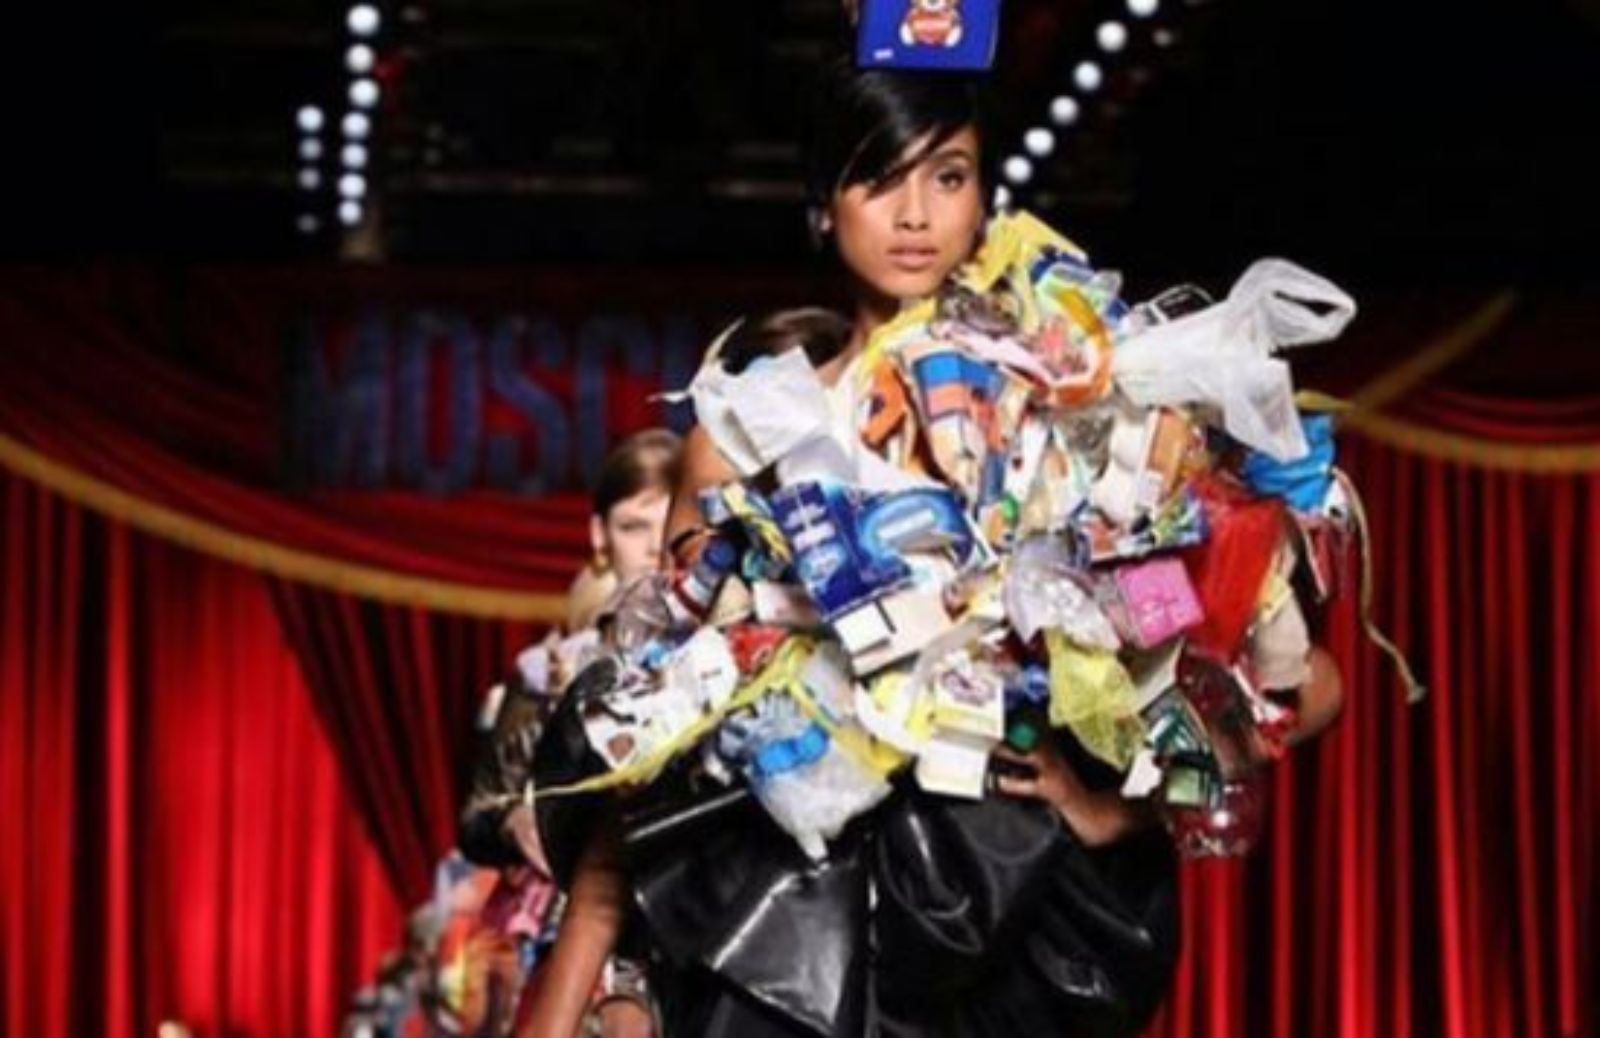 Milano Fashion Week 2017: Moschino veste di spazzatura le sue modelle